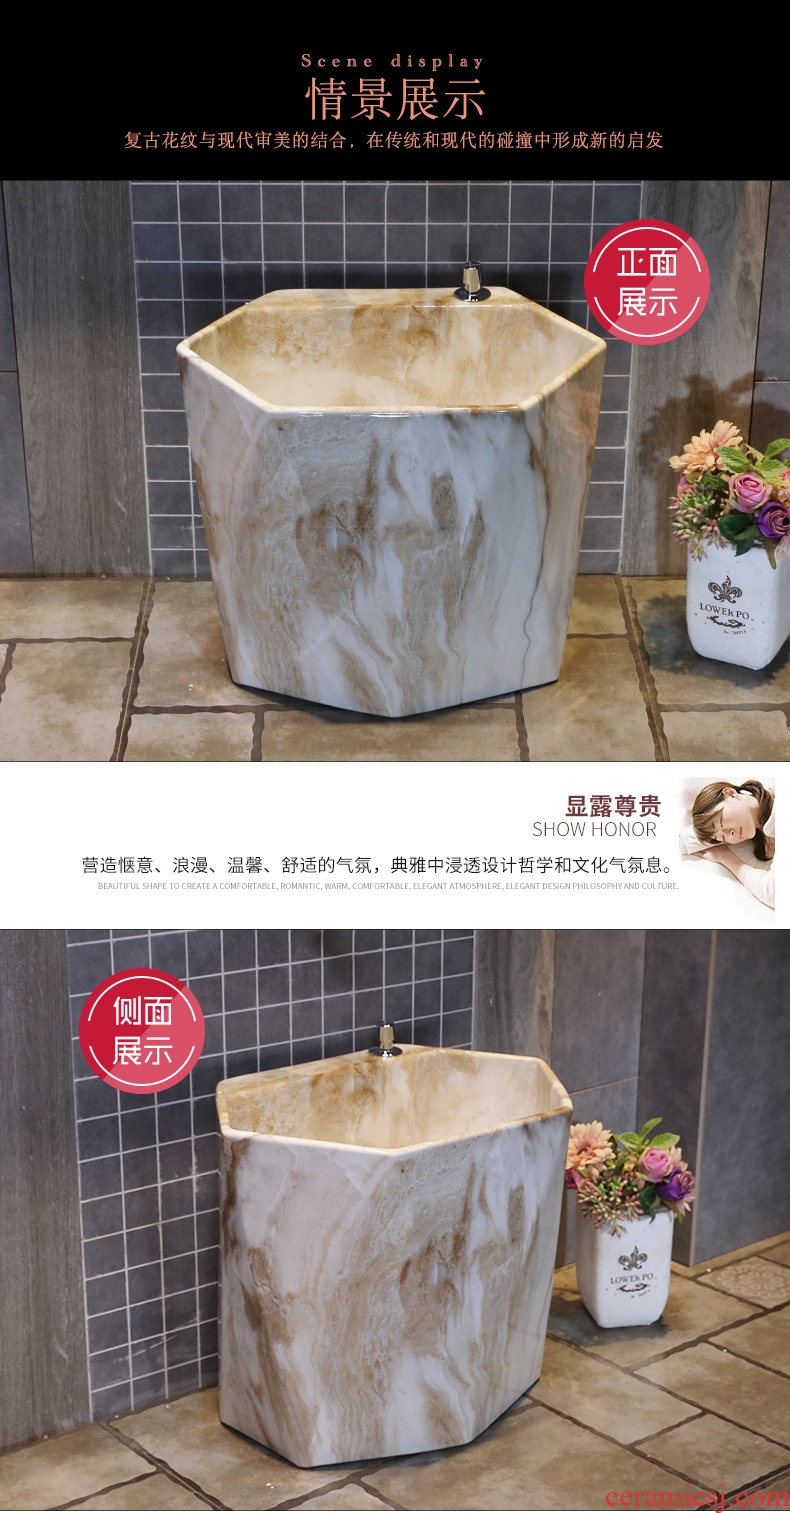 JingYan marble ceramic mop pool American household mop pool balcony toilet wash mop pool floor mop basin